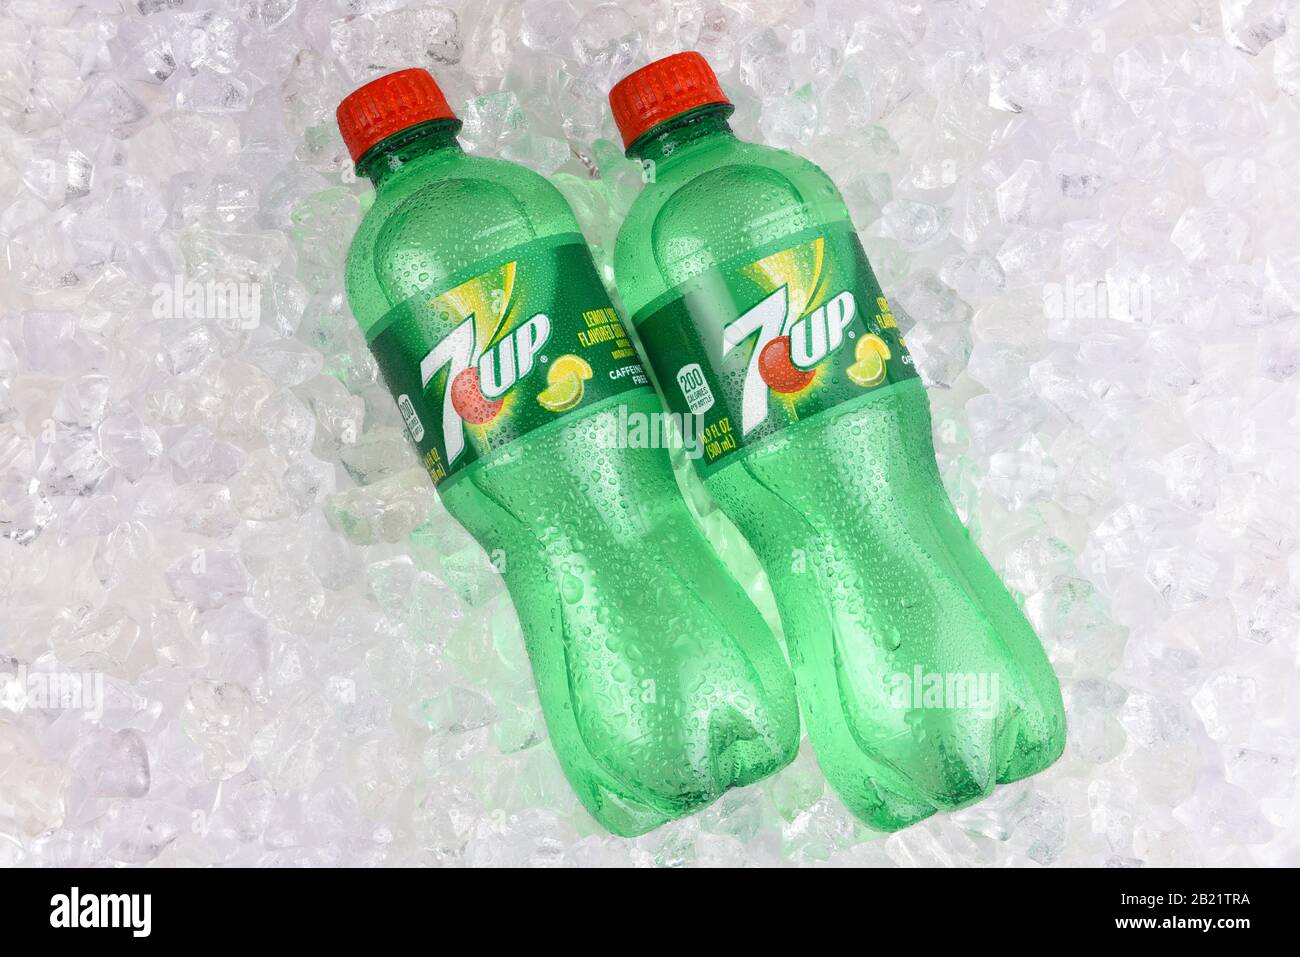 IRVINE, CALIFORNIA - AUGUST 19, 2019: Two plastic 7-up lemon-lime soda bottles in ice. Stock Photo